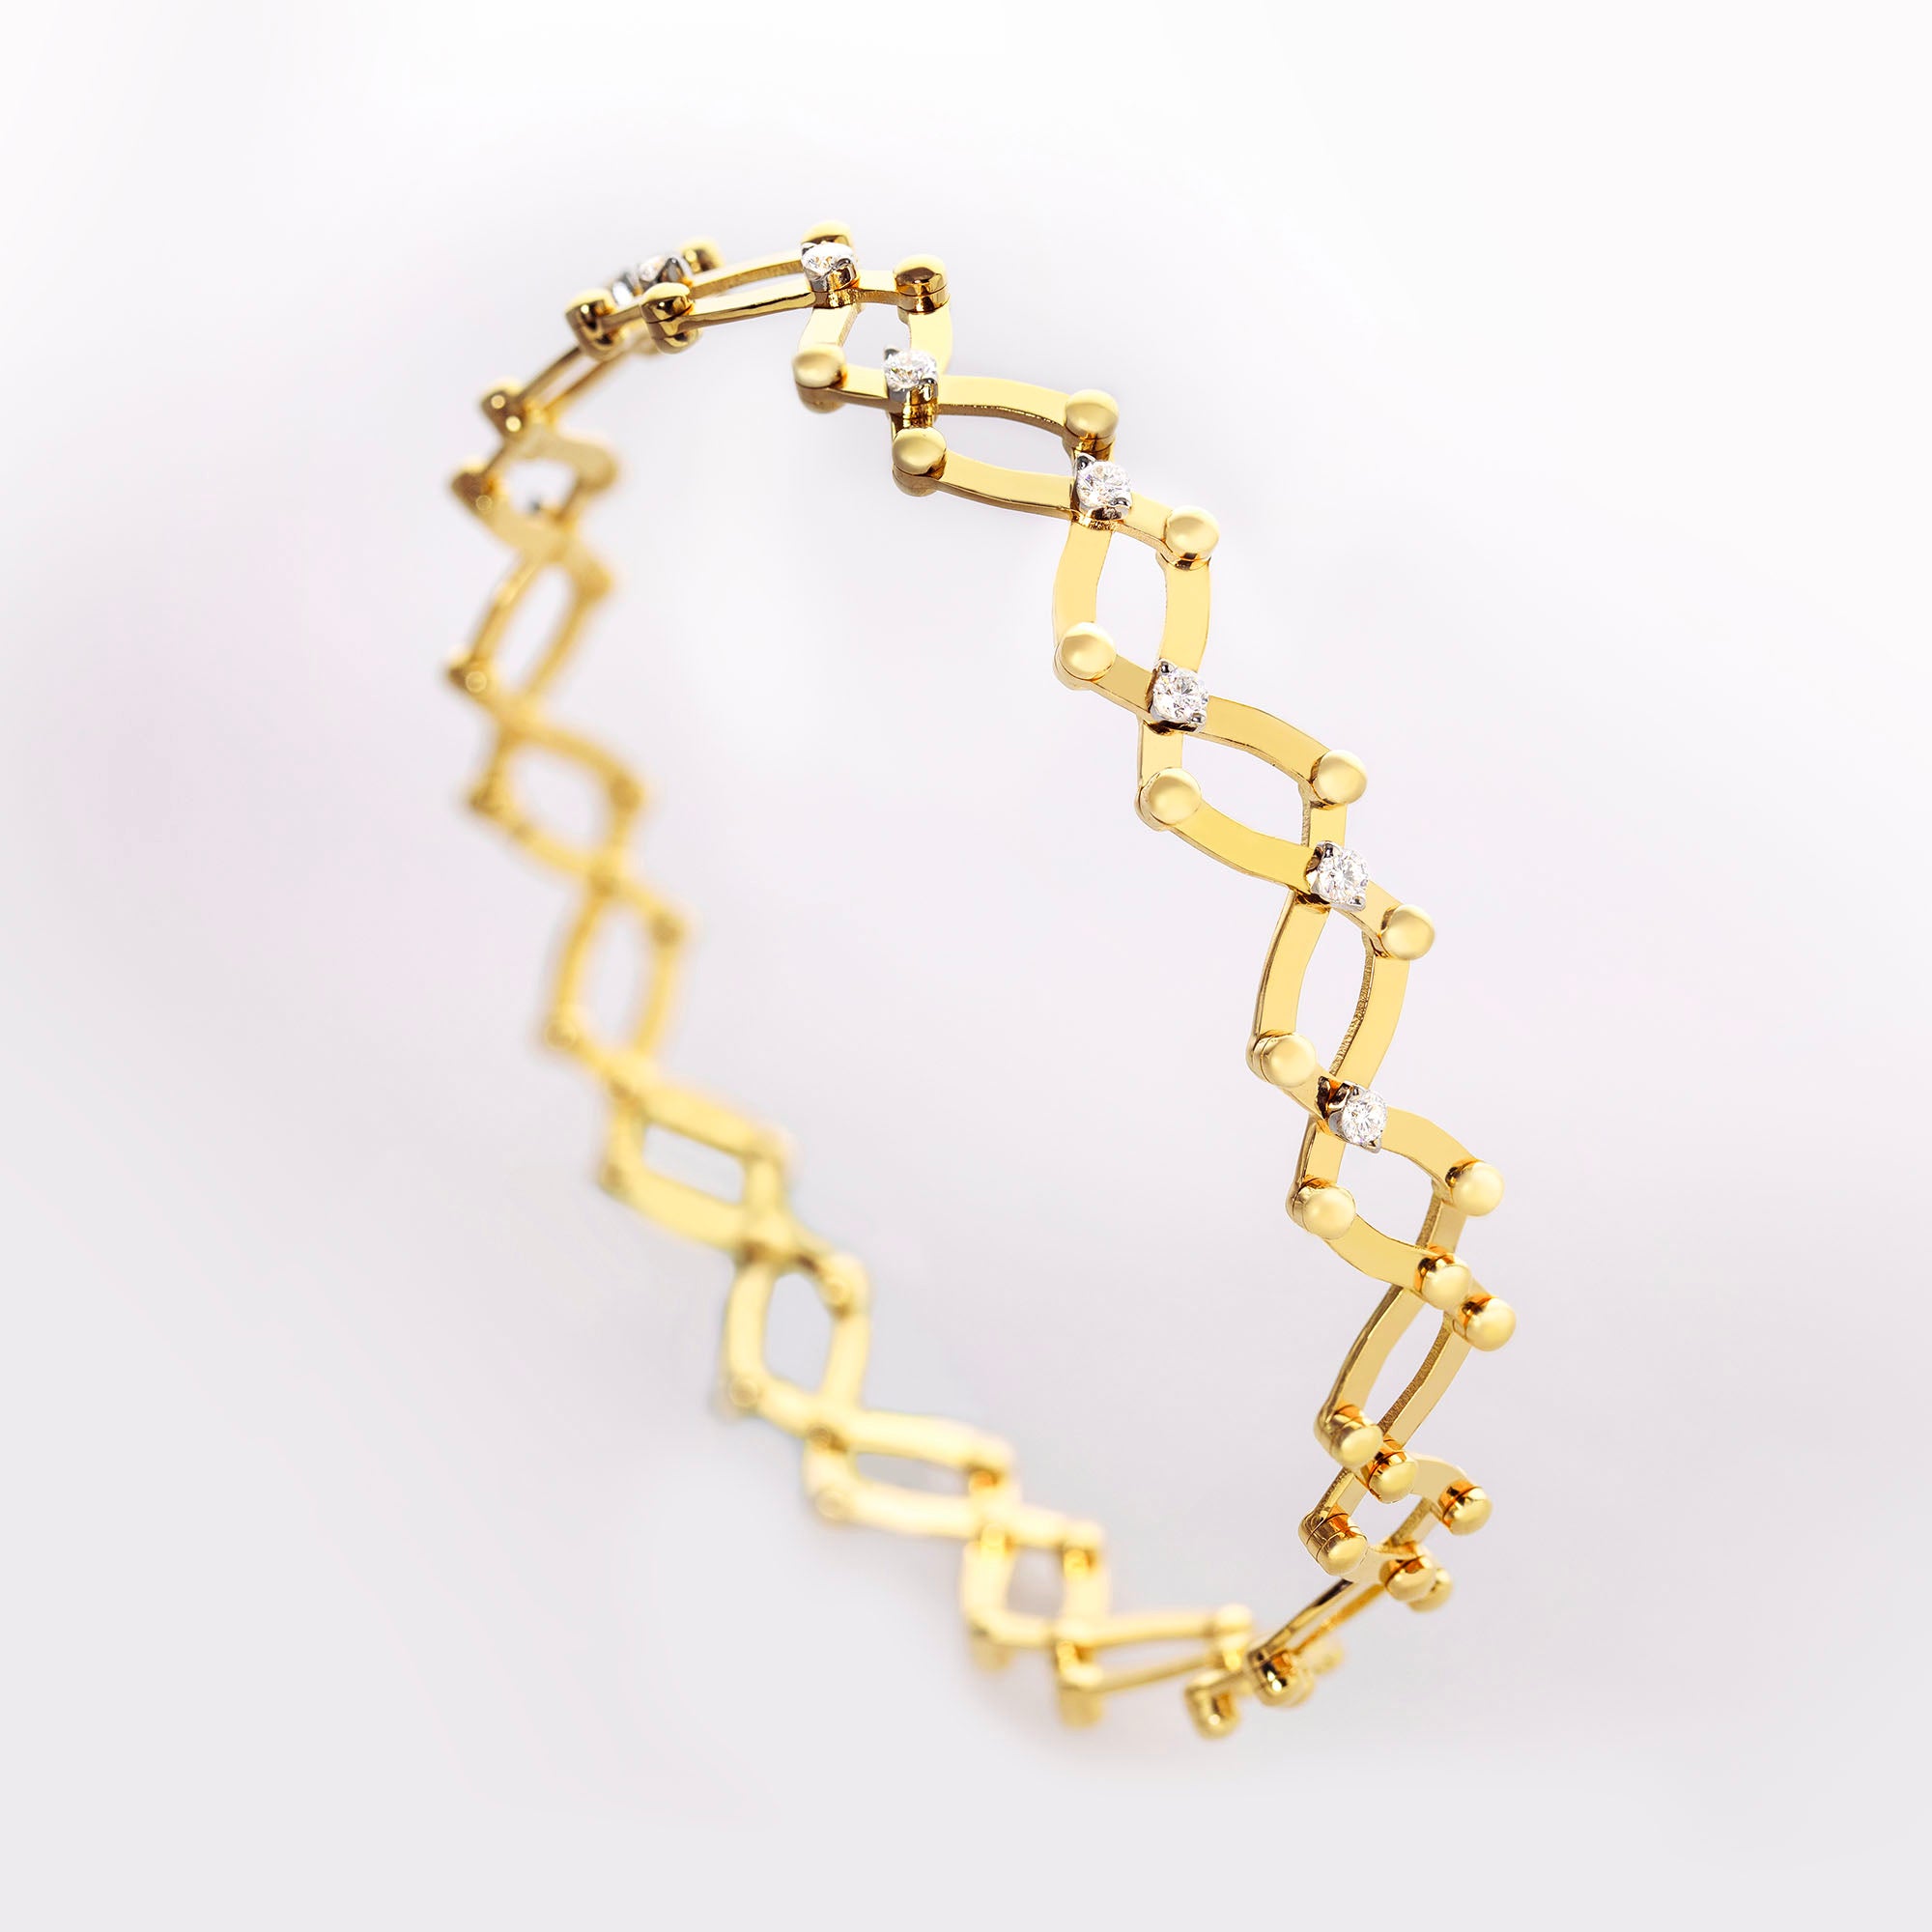 Serafino 1492 Extendible Ring Bracelet